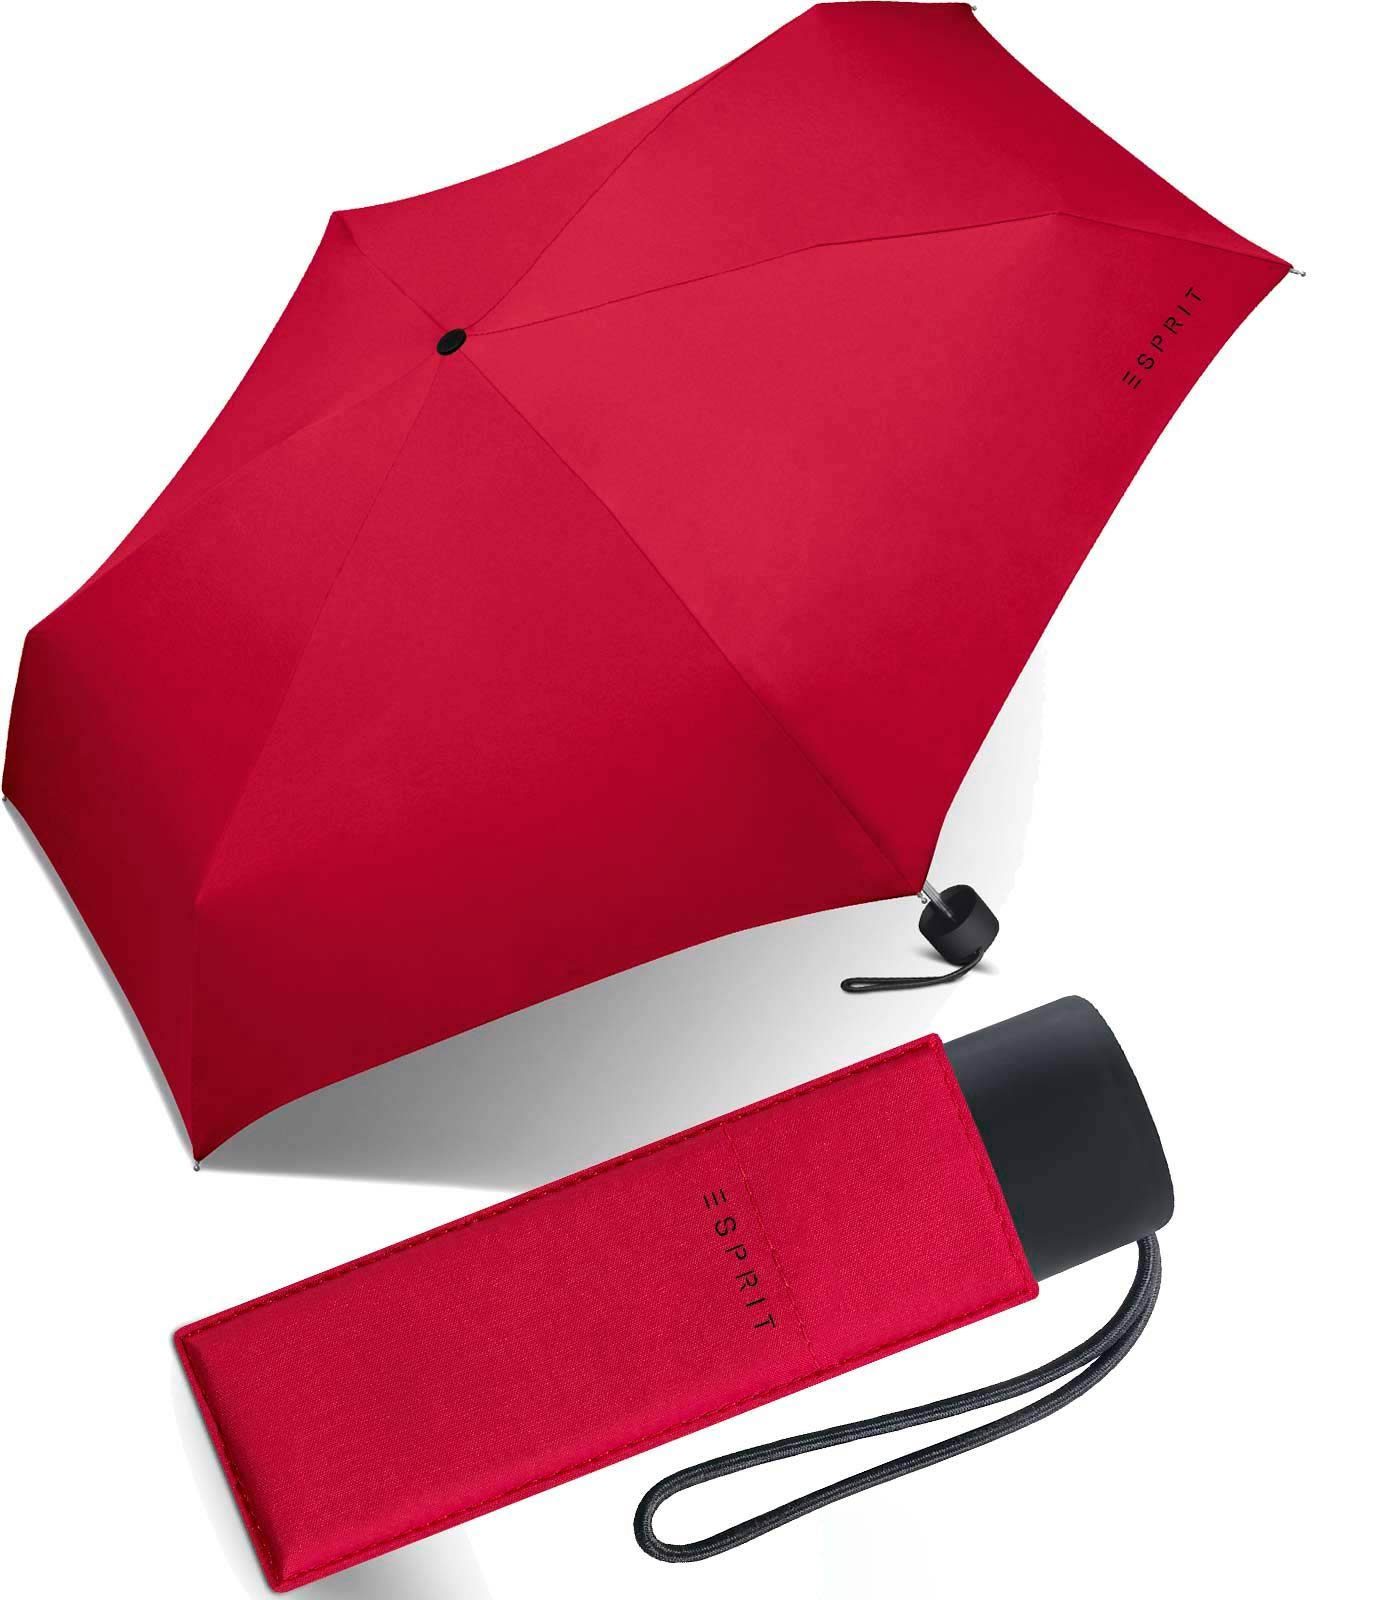 Esprit Taschenregenschirm Super Mini Schirm Petito sehr klein und leicht, passend für die Handtasche rot